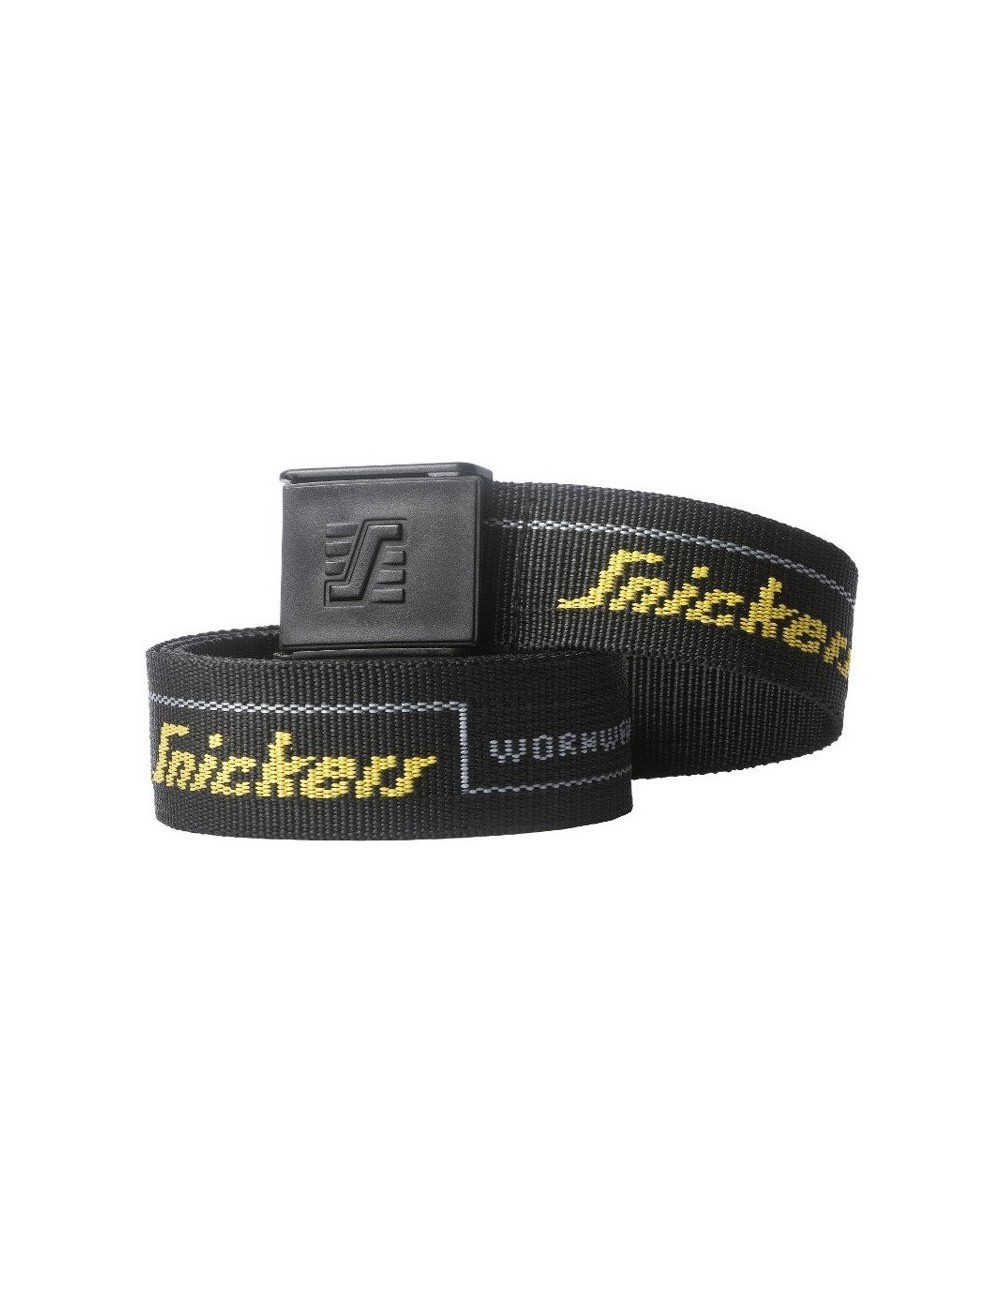 Snickers Workwear 9033 Logo Belt